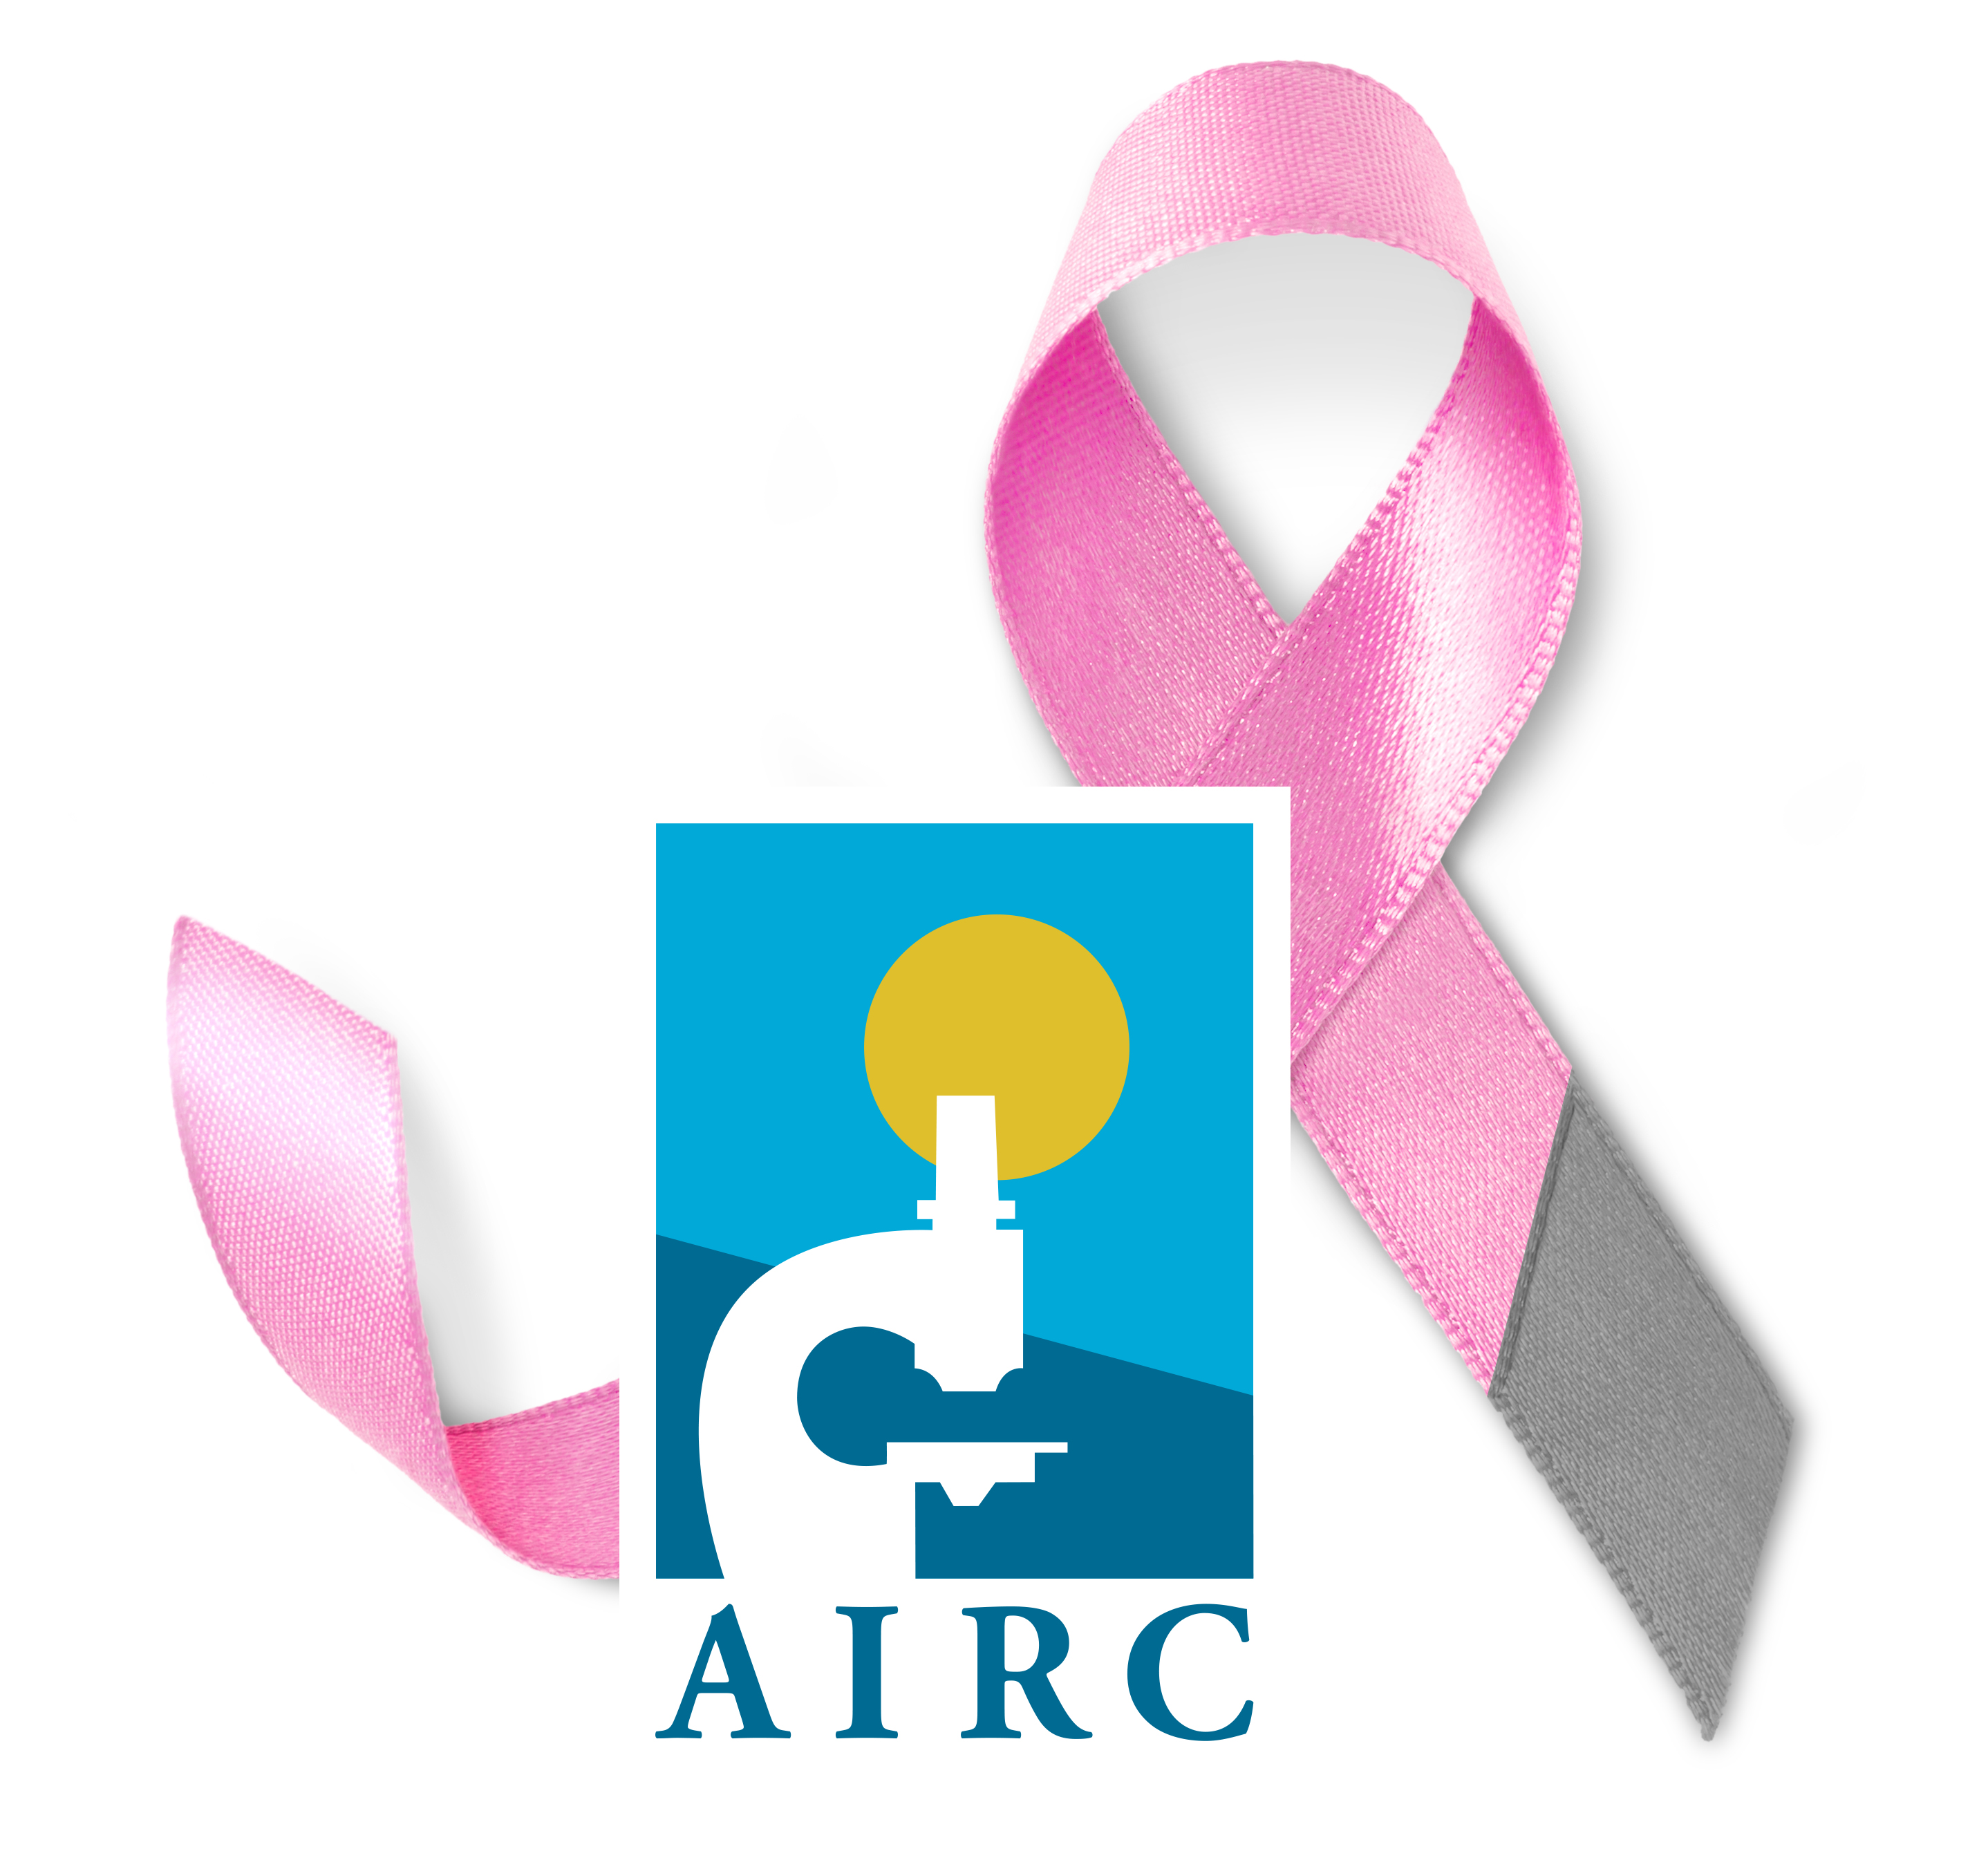 A Ottobre illuminiamo di rosa i nostri Comuni insieme a Fondazione Airc